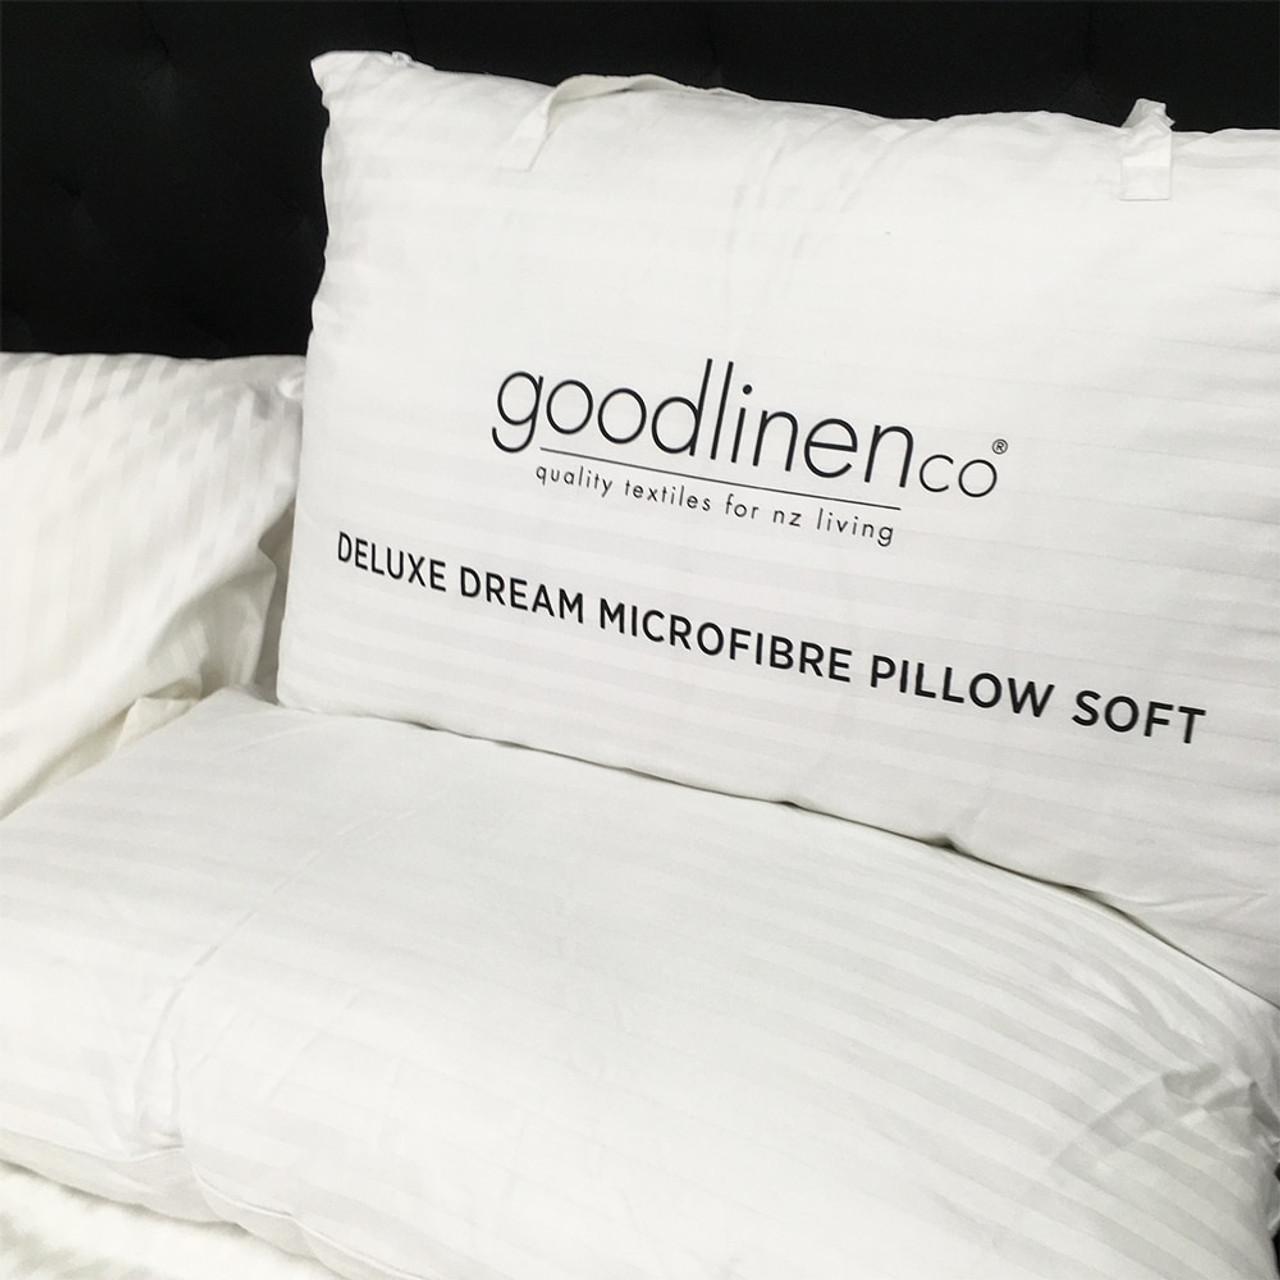 Good Linen Co Pillow